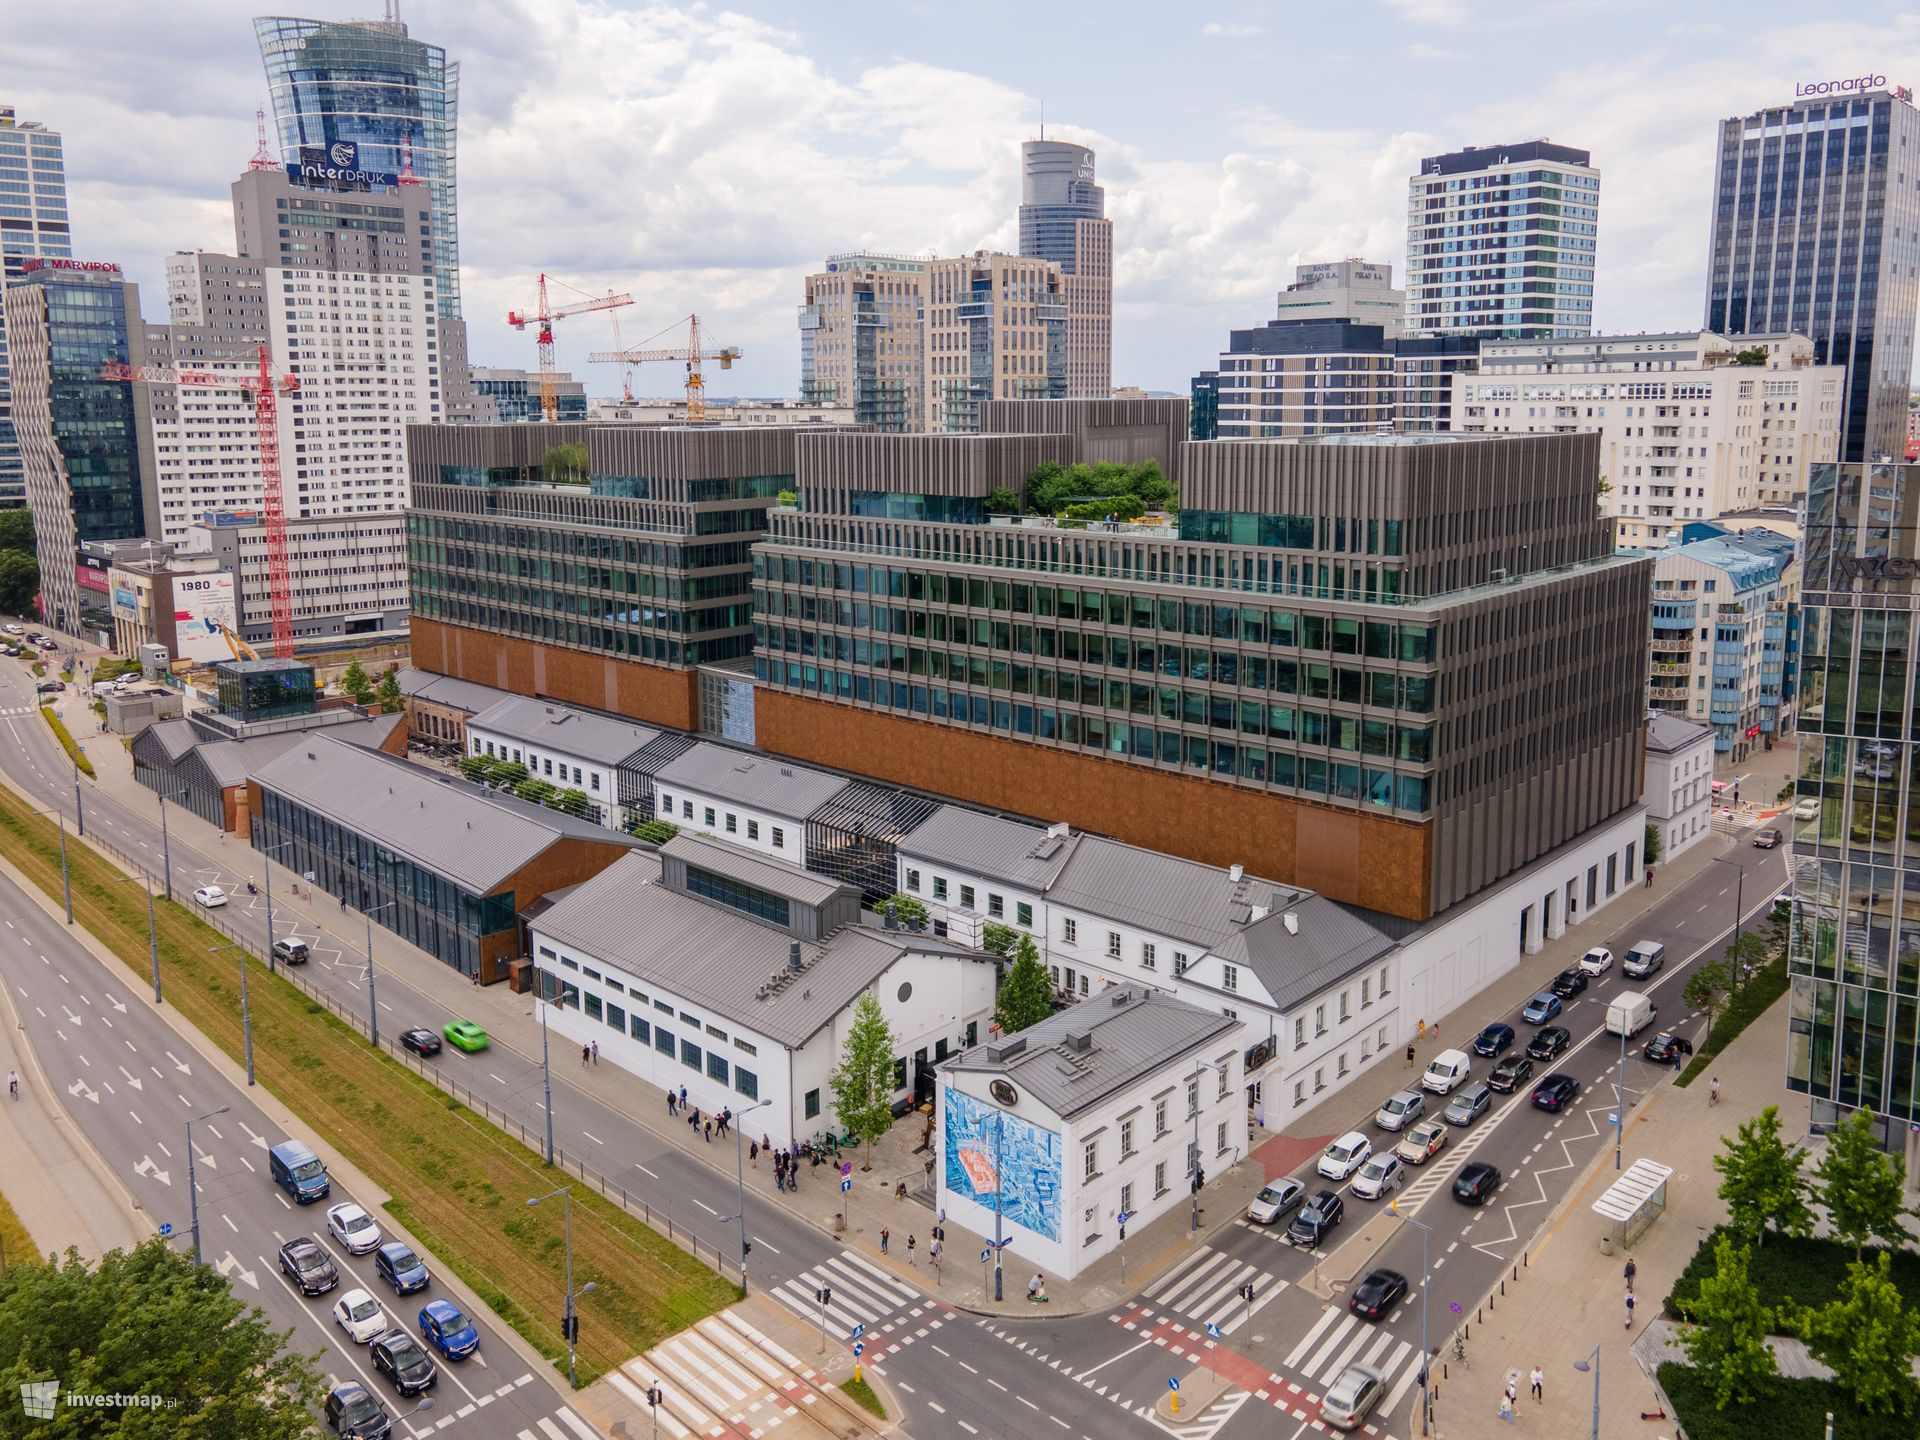 Strefa Health & Beauty w Fabryce Norblina w Warszawie wita nowych najemców